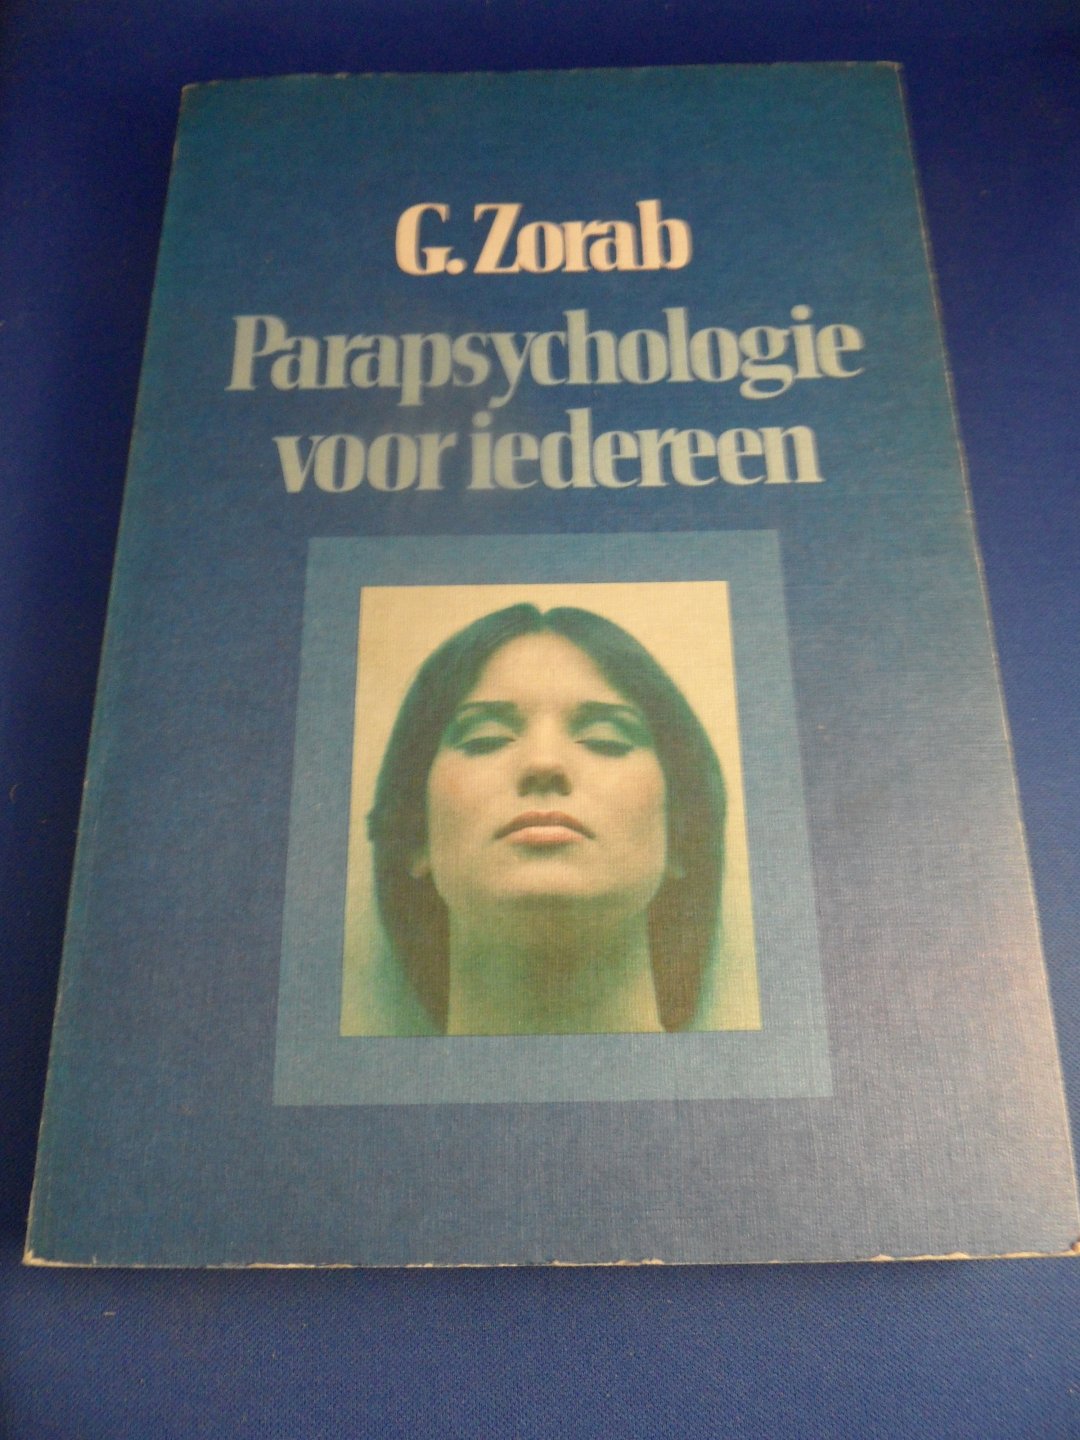 Zorab, G. - Parapsychologie voor iedereen